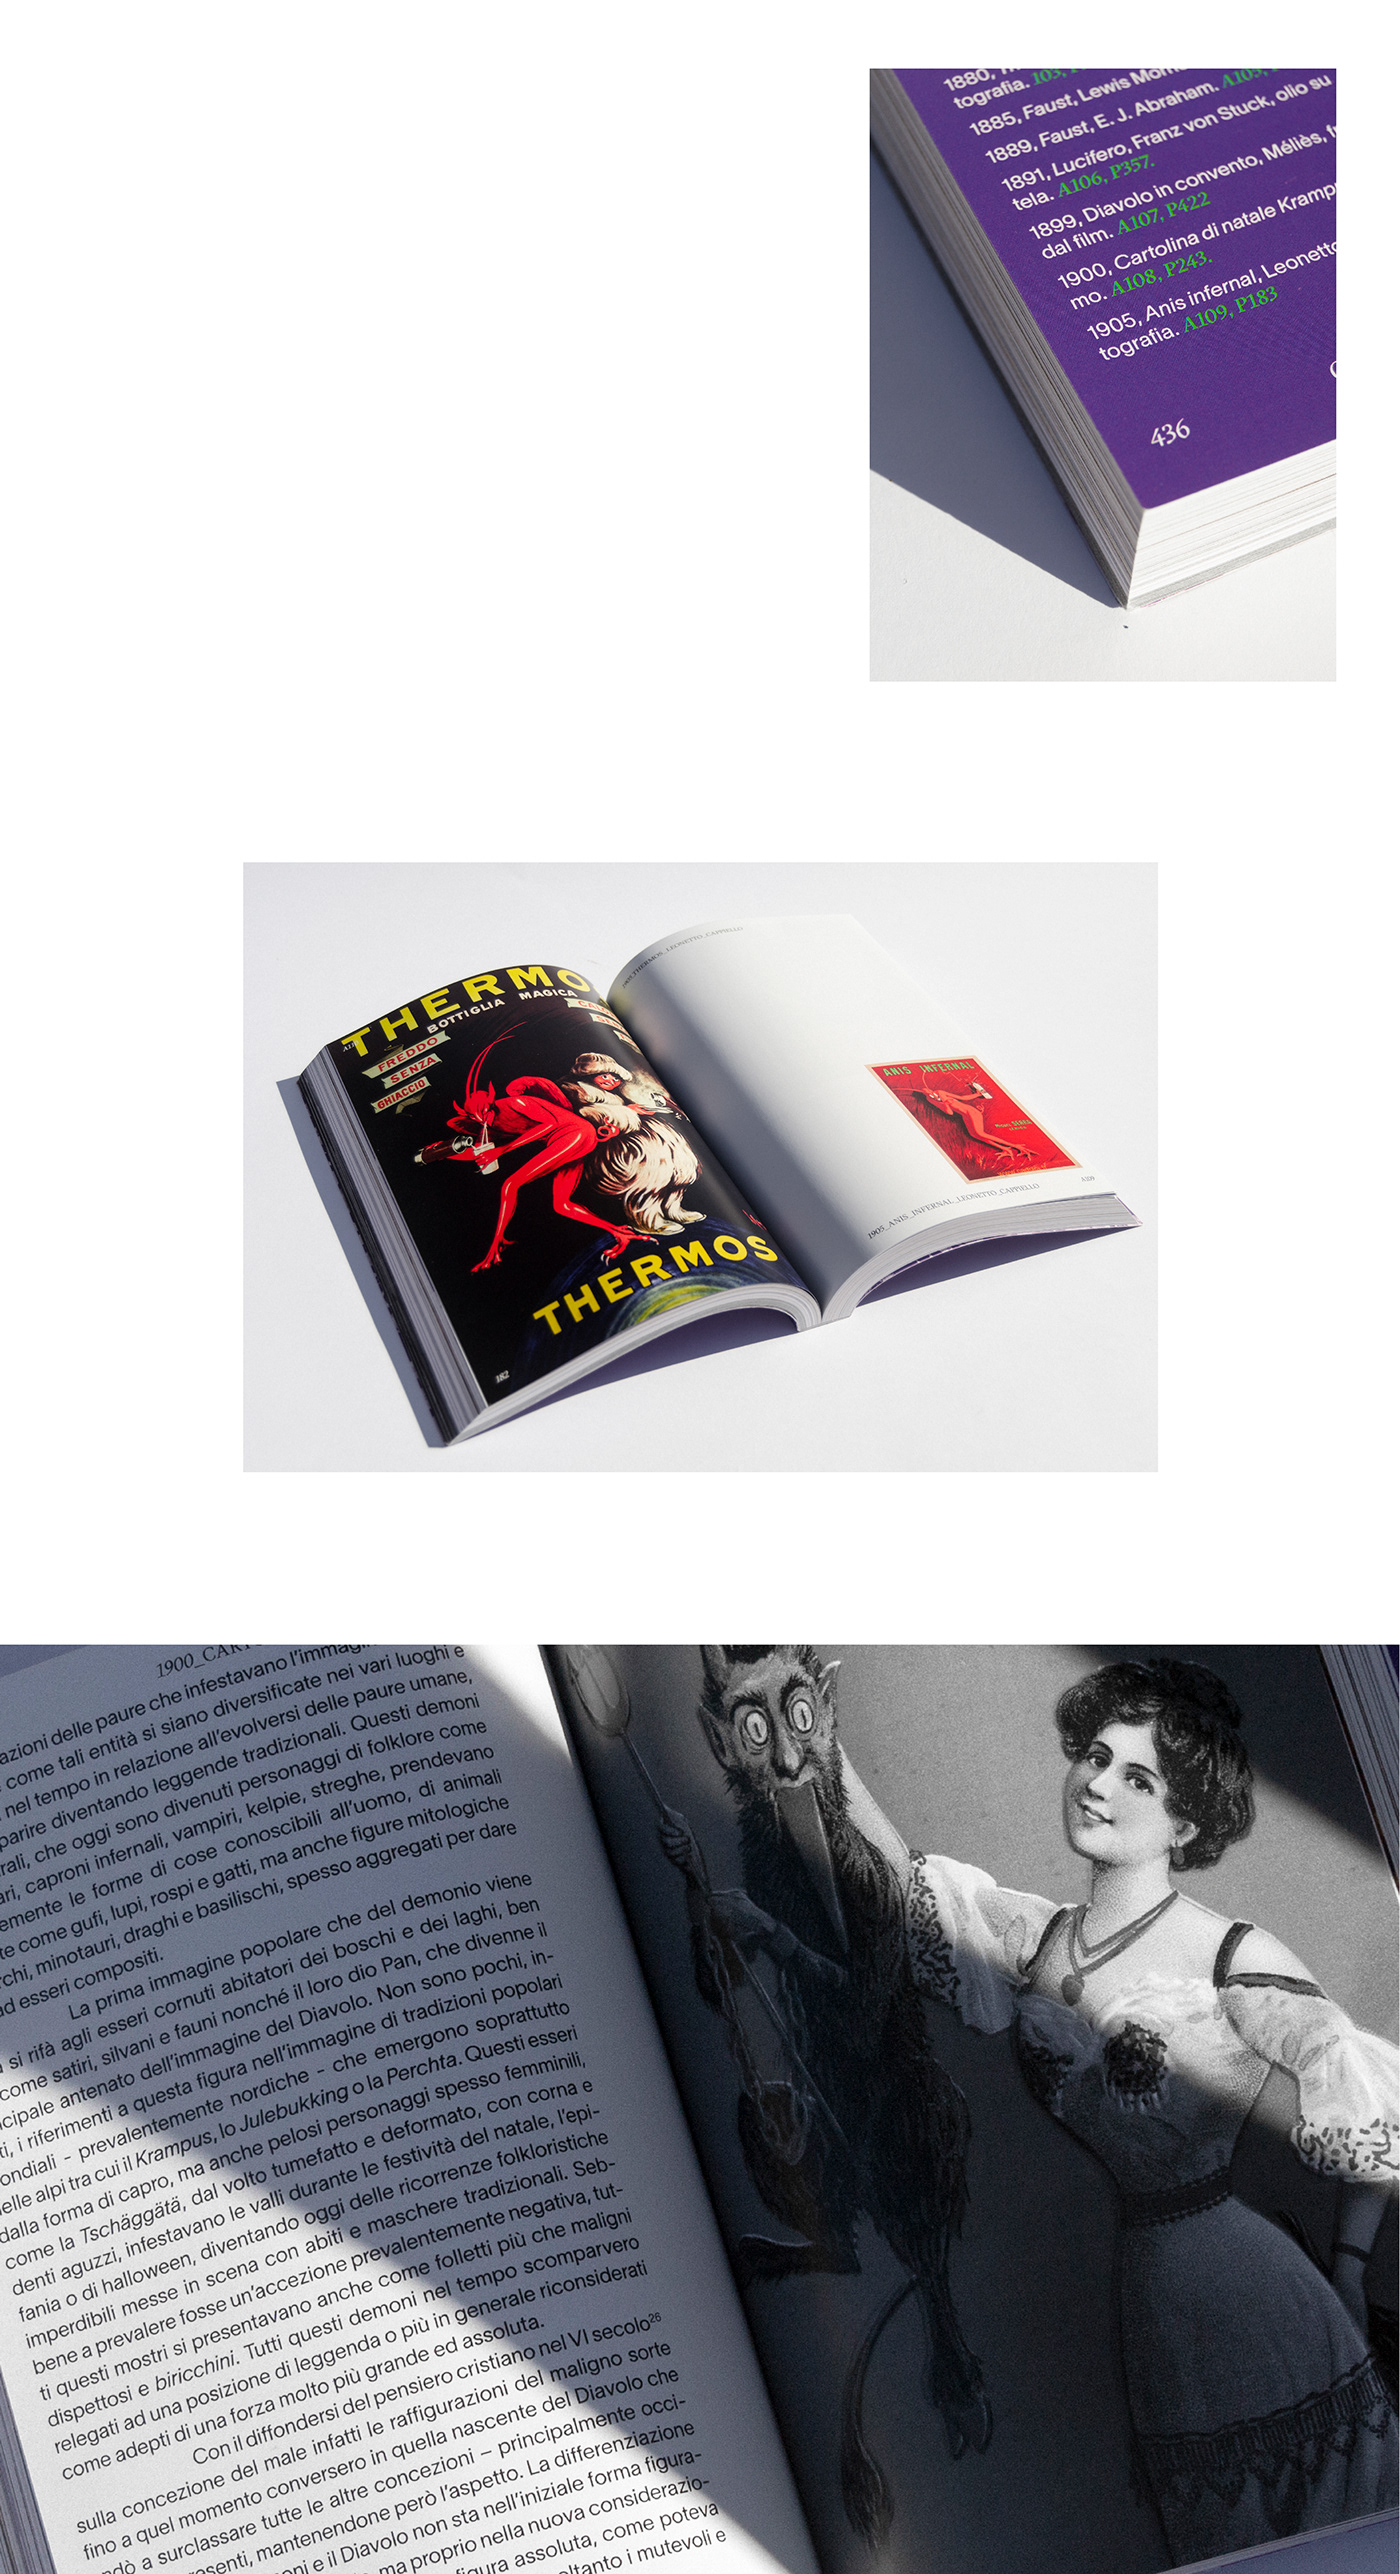 art history devil editorial design  evil graphic design  iconography impaginazione